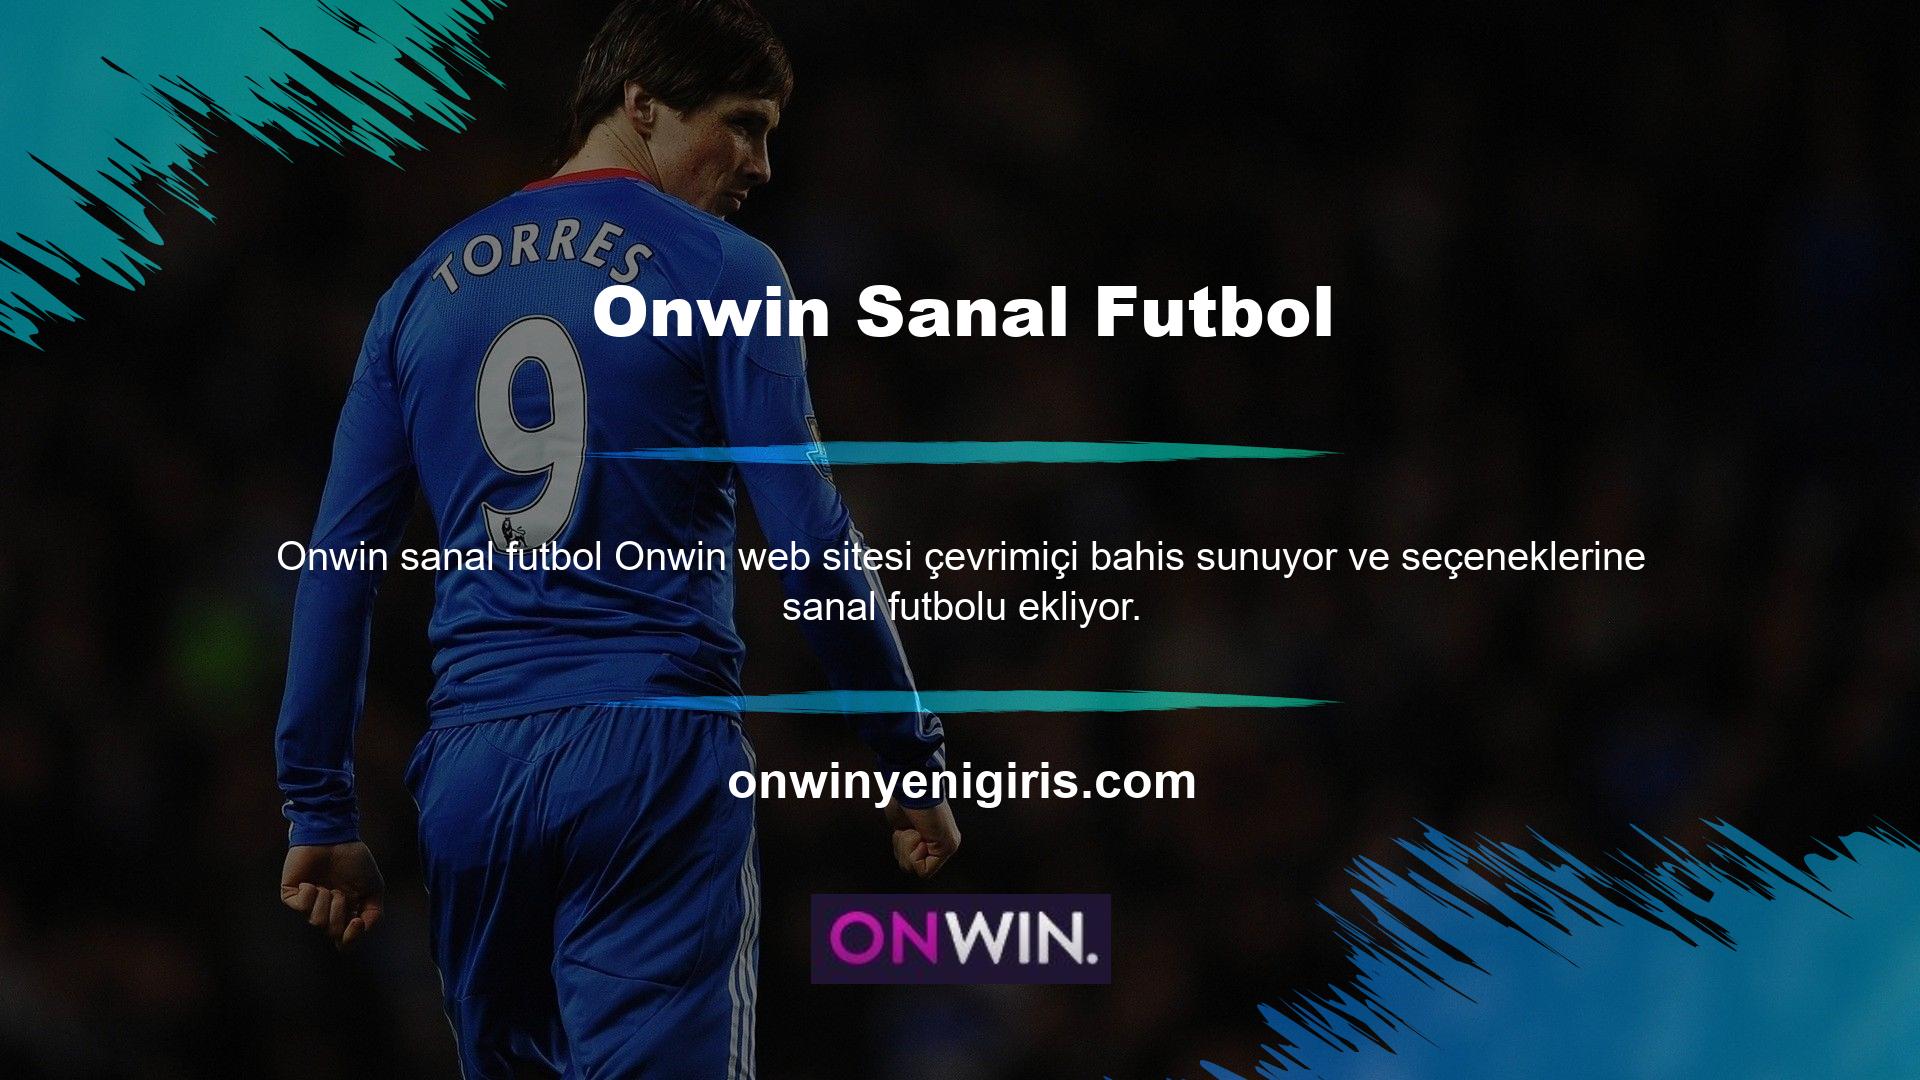 Onwin sanal futbol seçimleri çok çeşitlidir ve çok çeşitli bahis fırsatları sunar